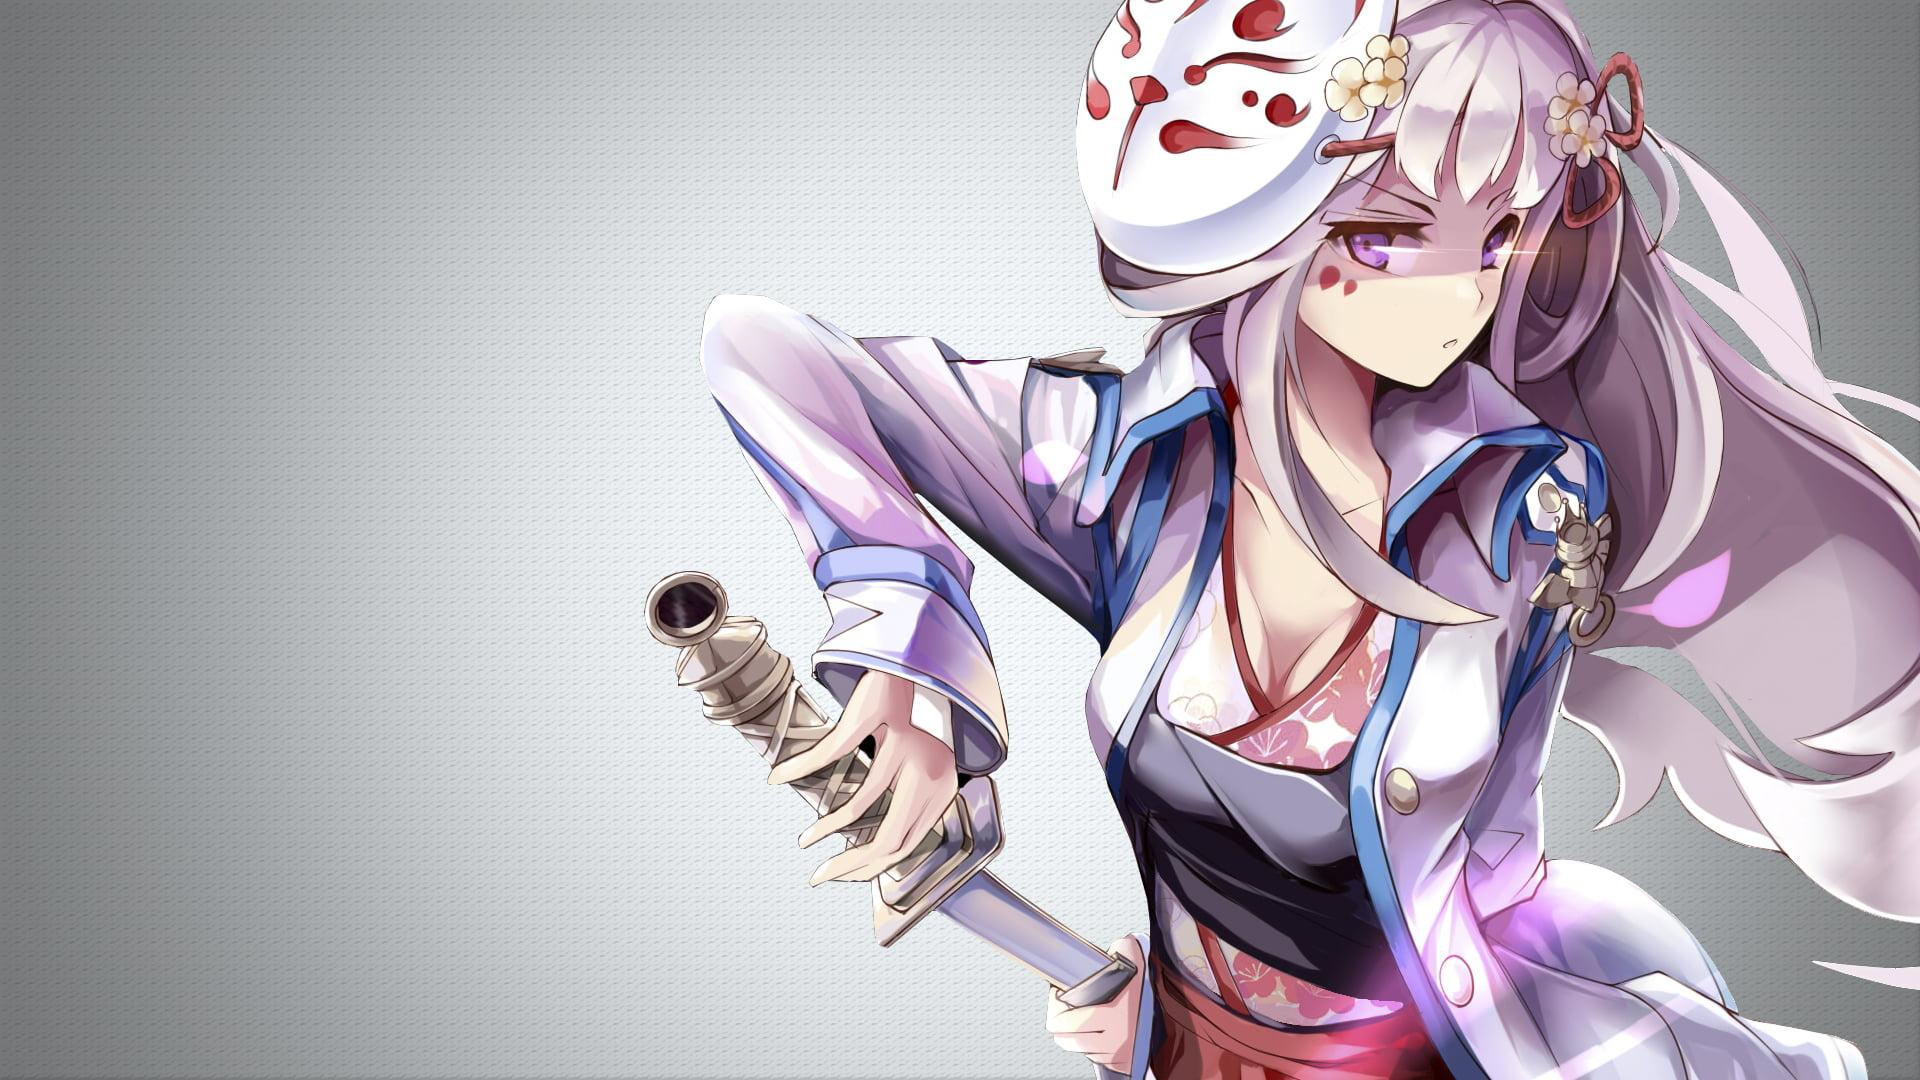 Female holding sword anime illustration HD wallpaper